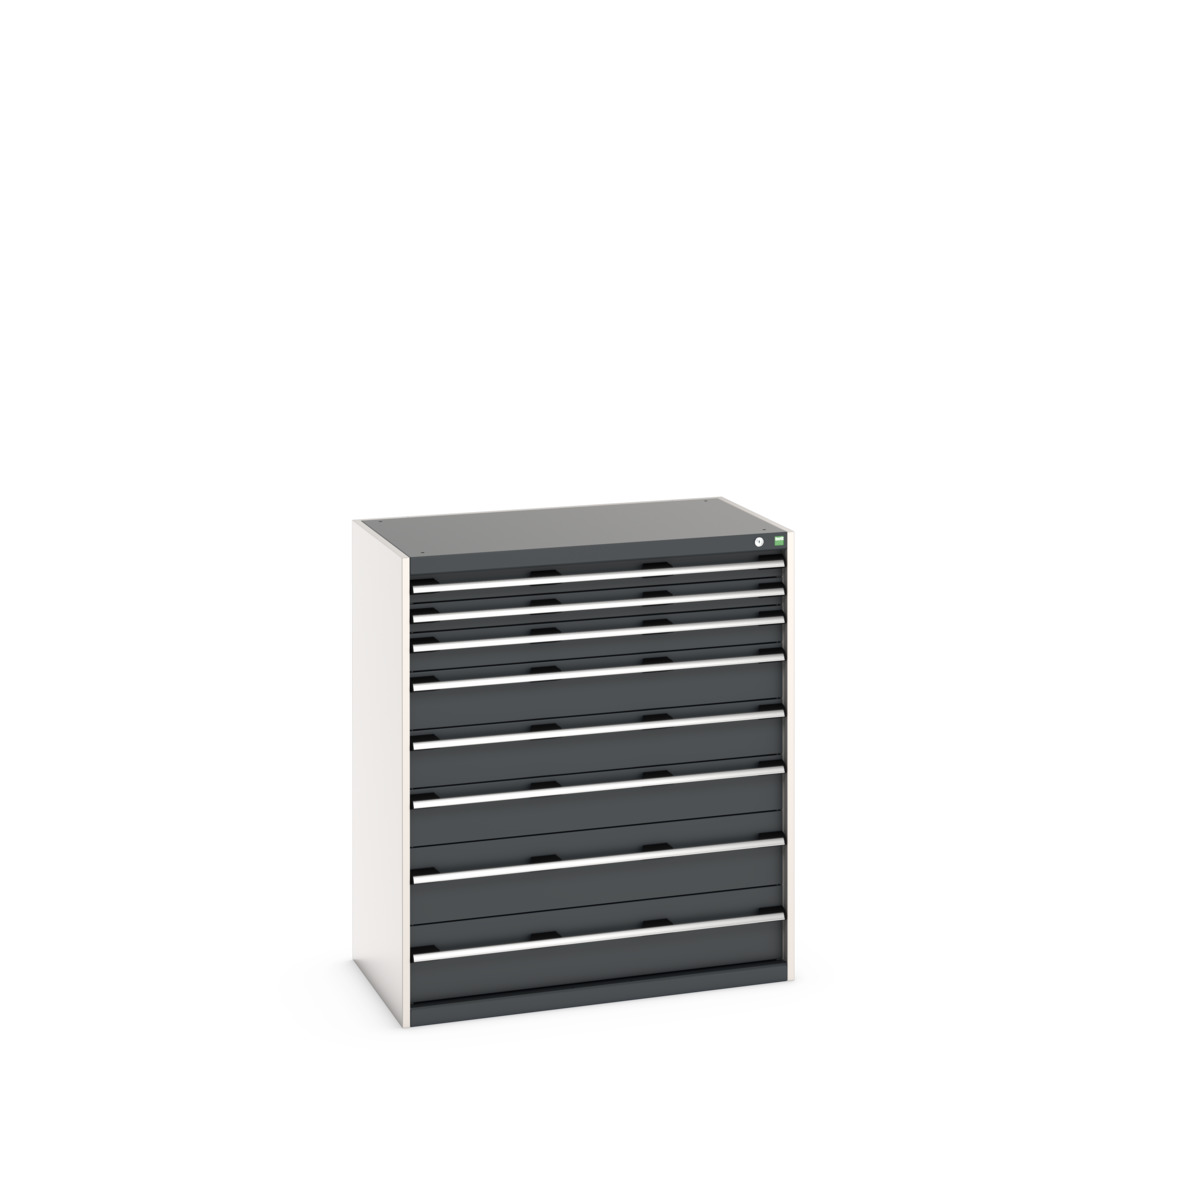 40021039.19V - cubio drawer cabinet